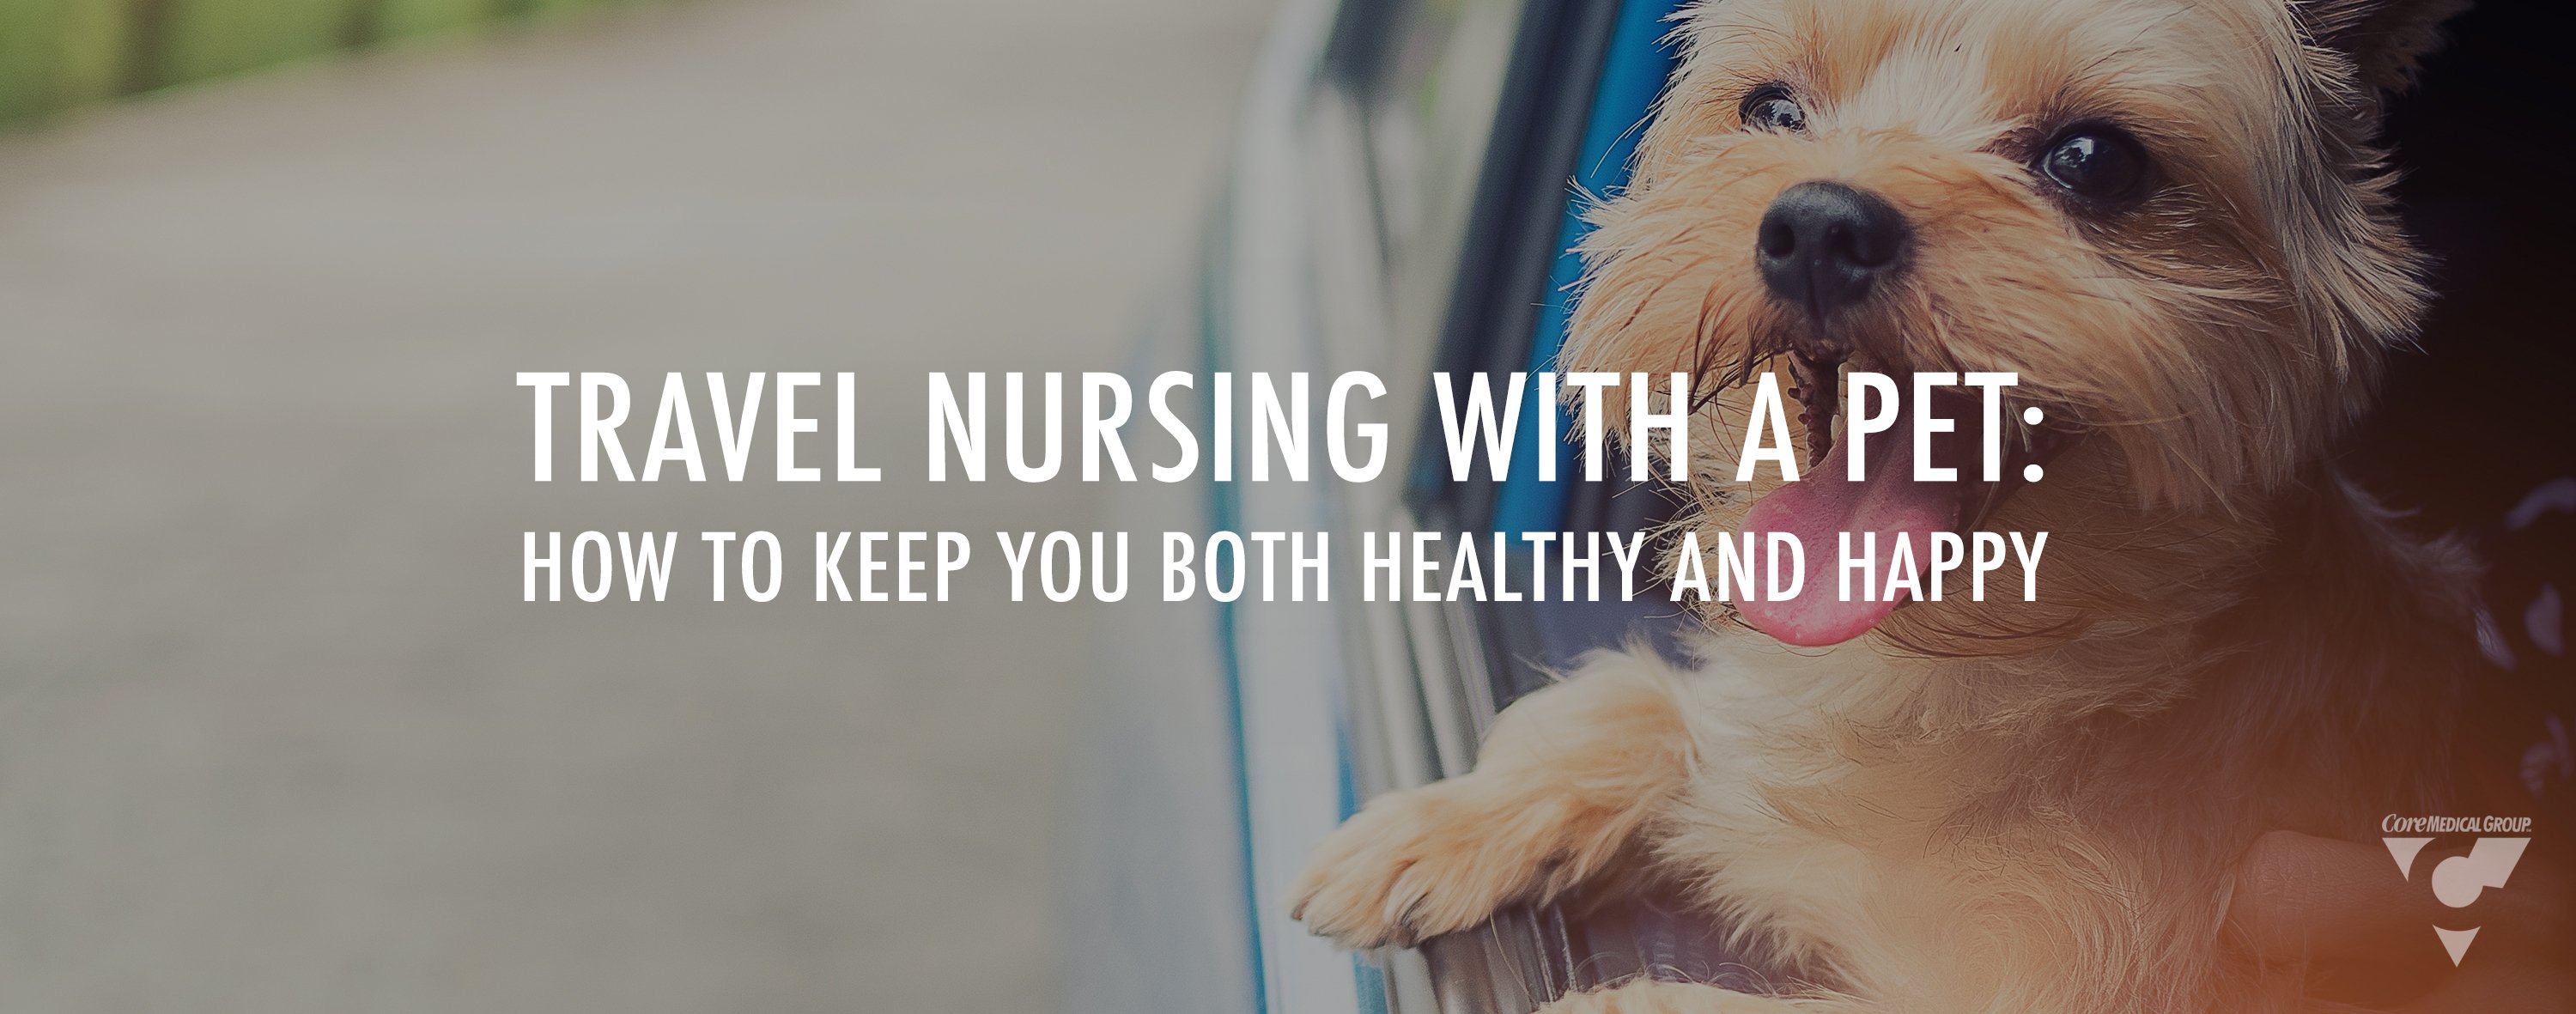 Travel nursing with a pet travel nursing with a dog